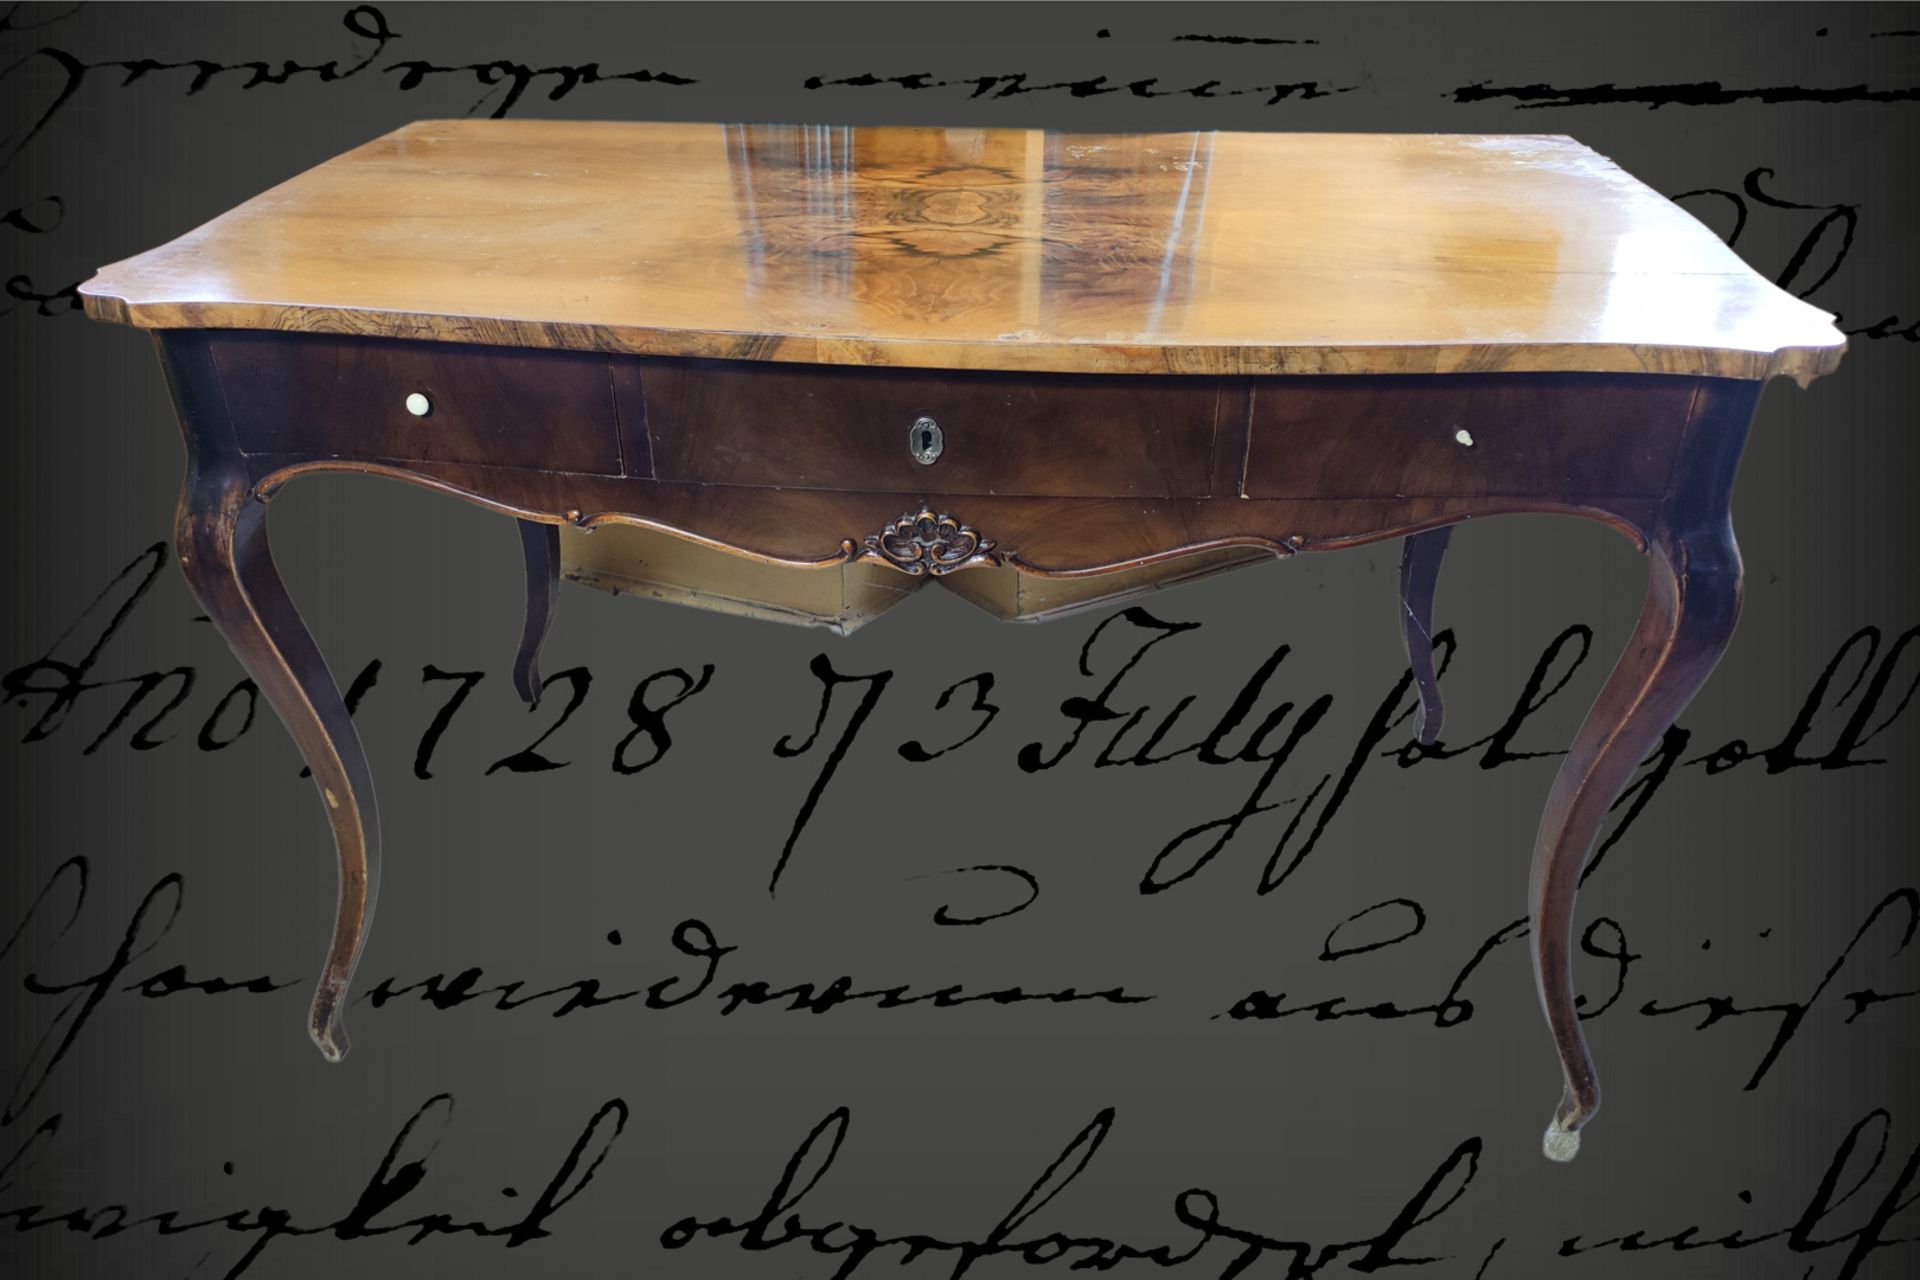 Wiener Barock Schreibtisch, Nussbaum, um 1860, 3 Schubfächer, leichte geschnitzte Verzierungen,